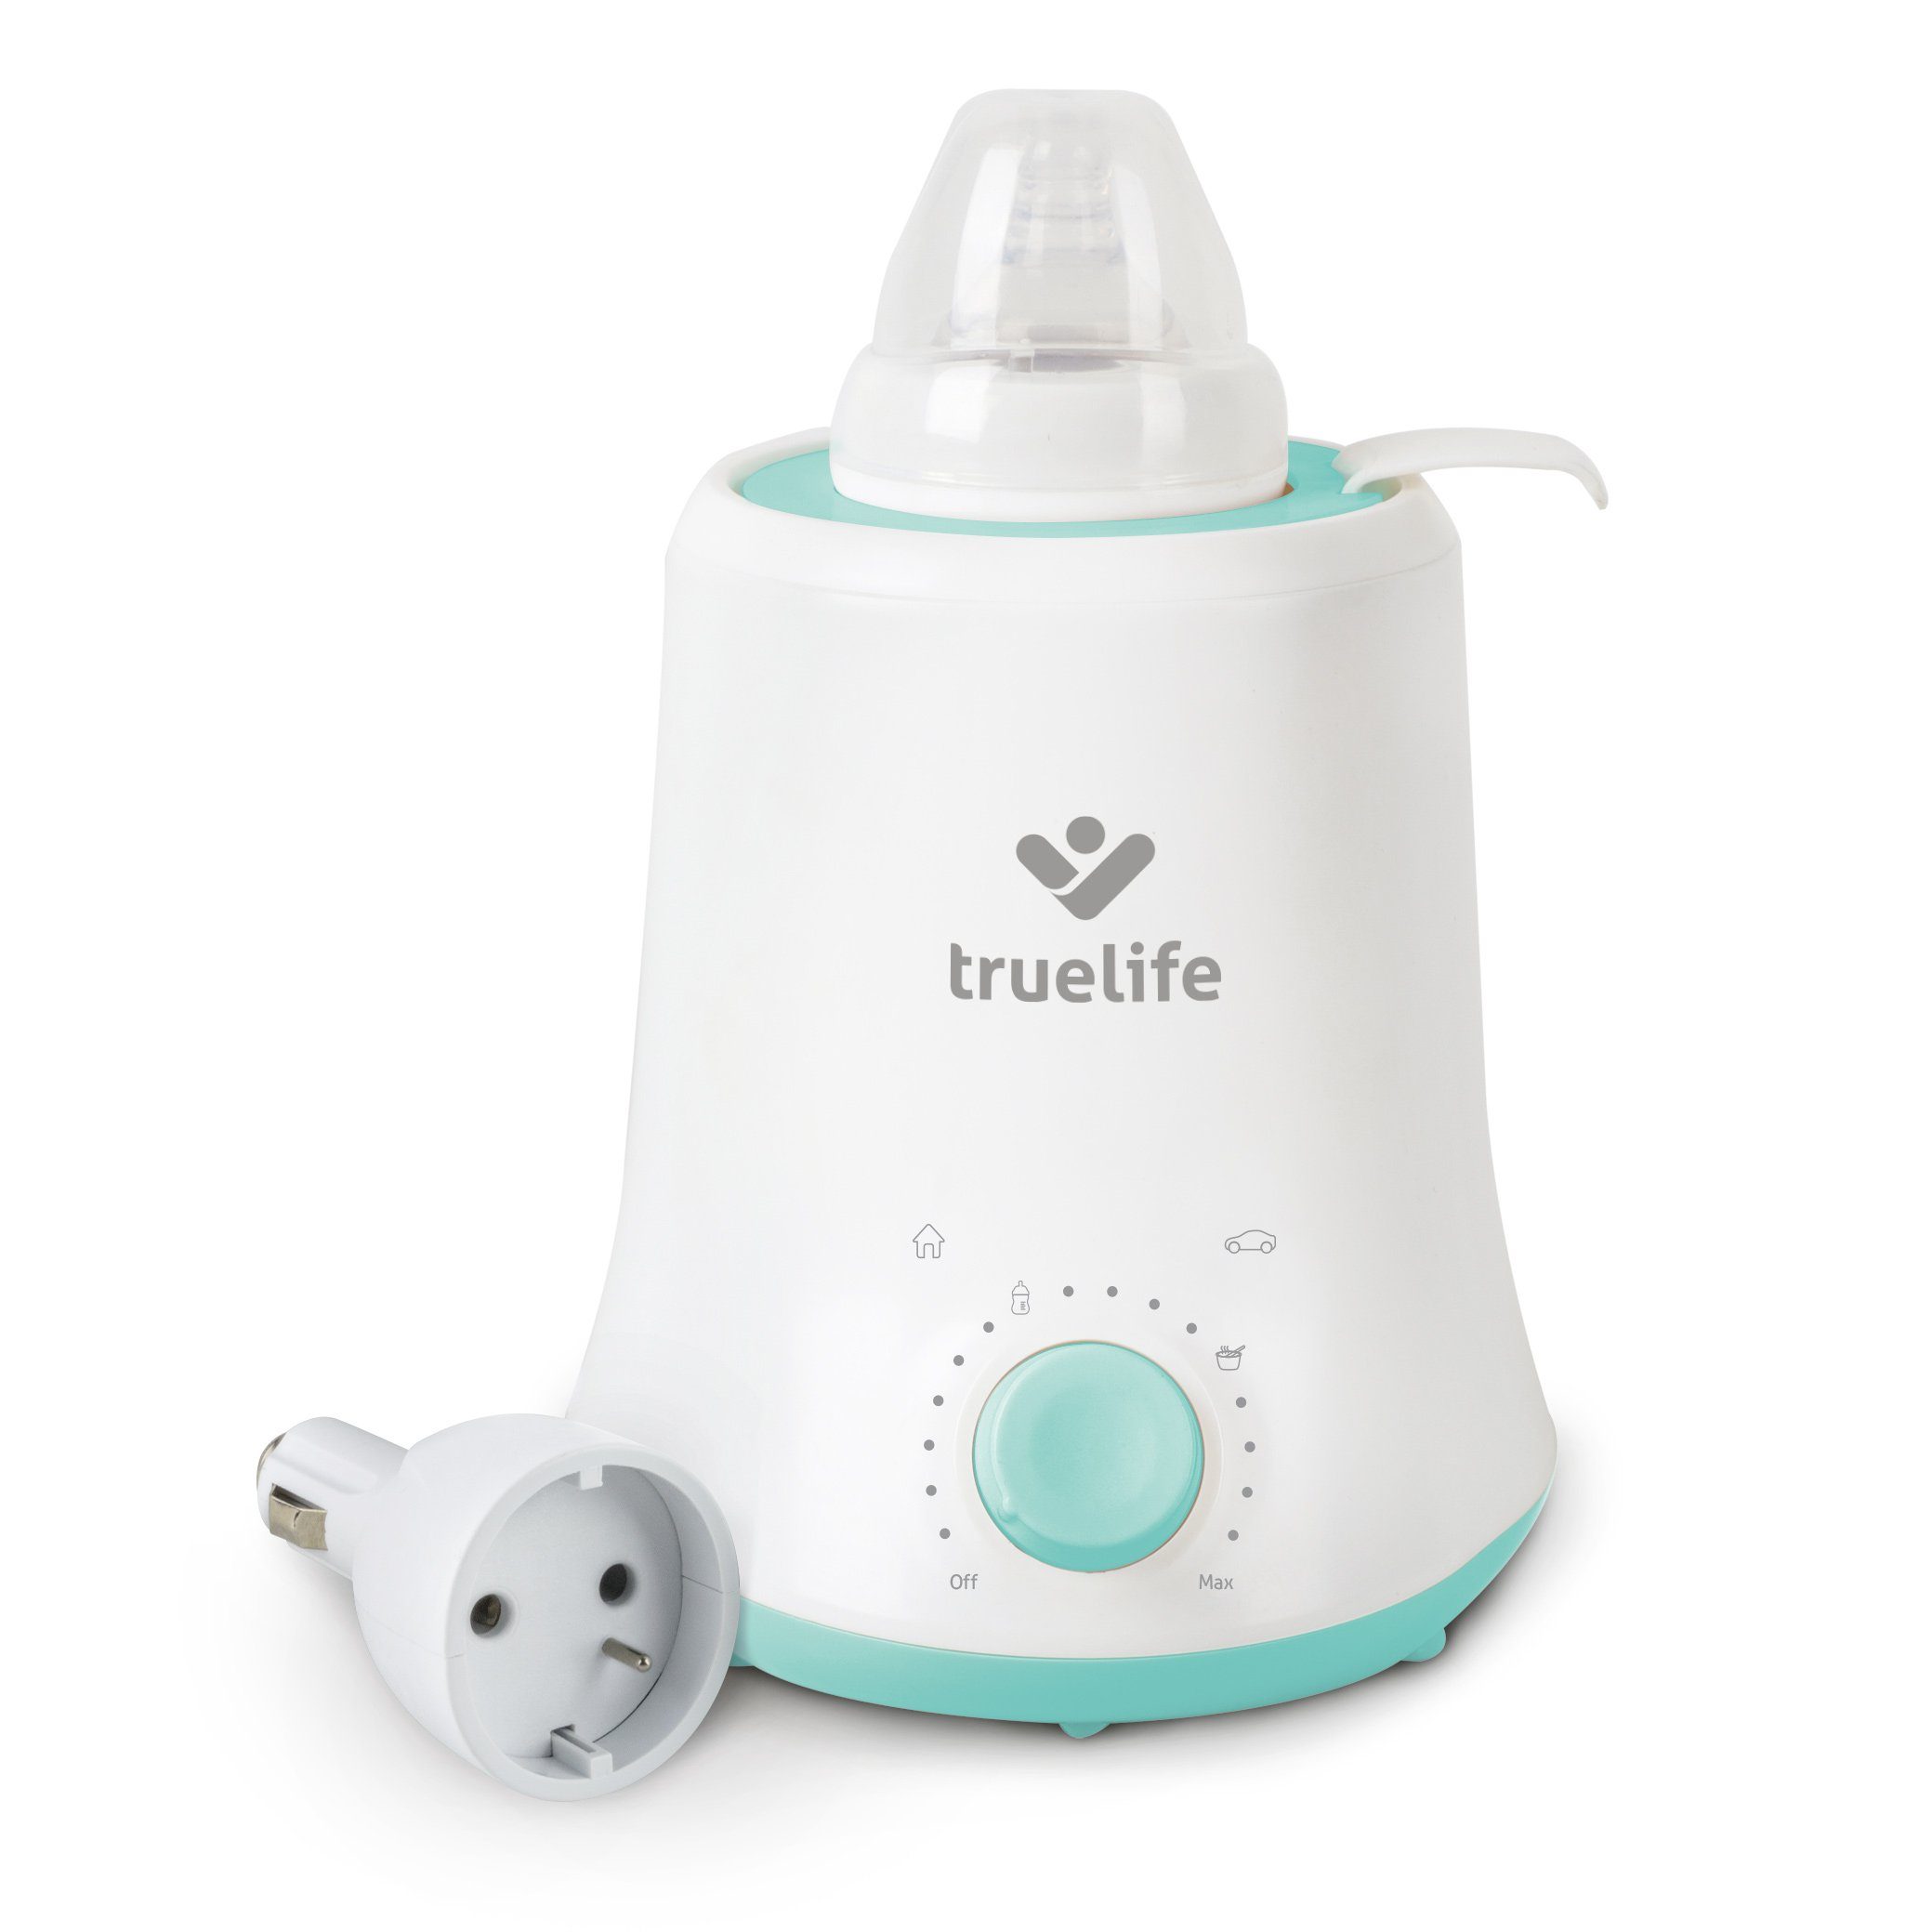 TrueLife Babyflaschenwärmer Invio BW Single, mit praktischer Warmhaltefunktion